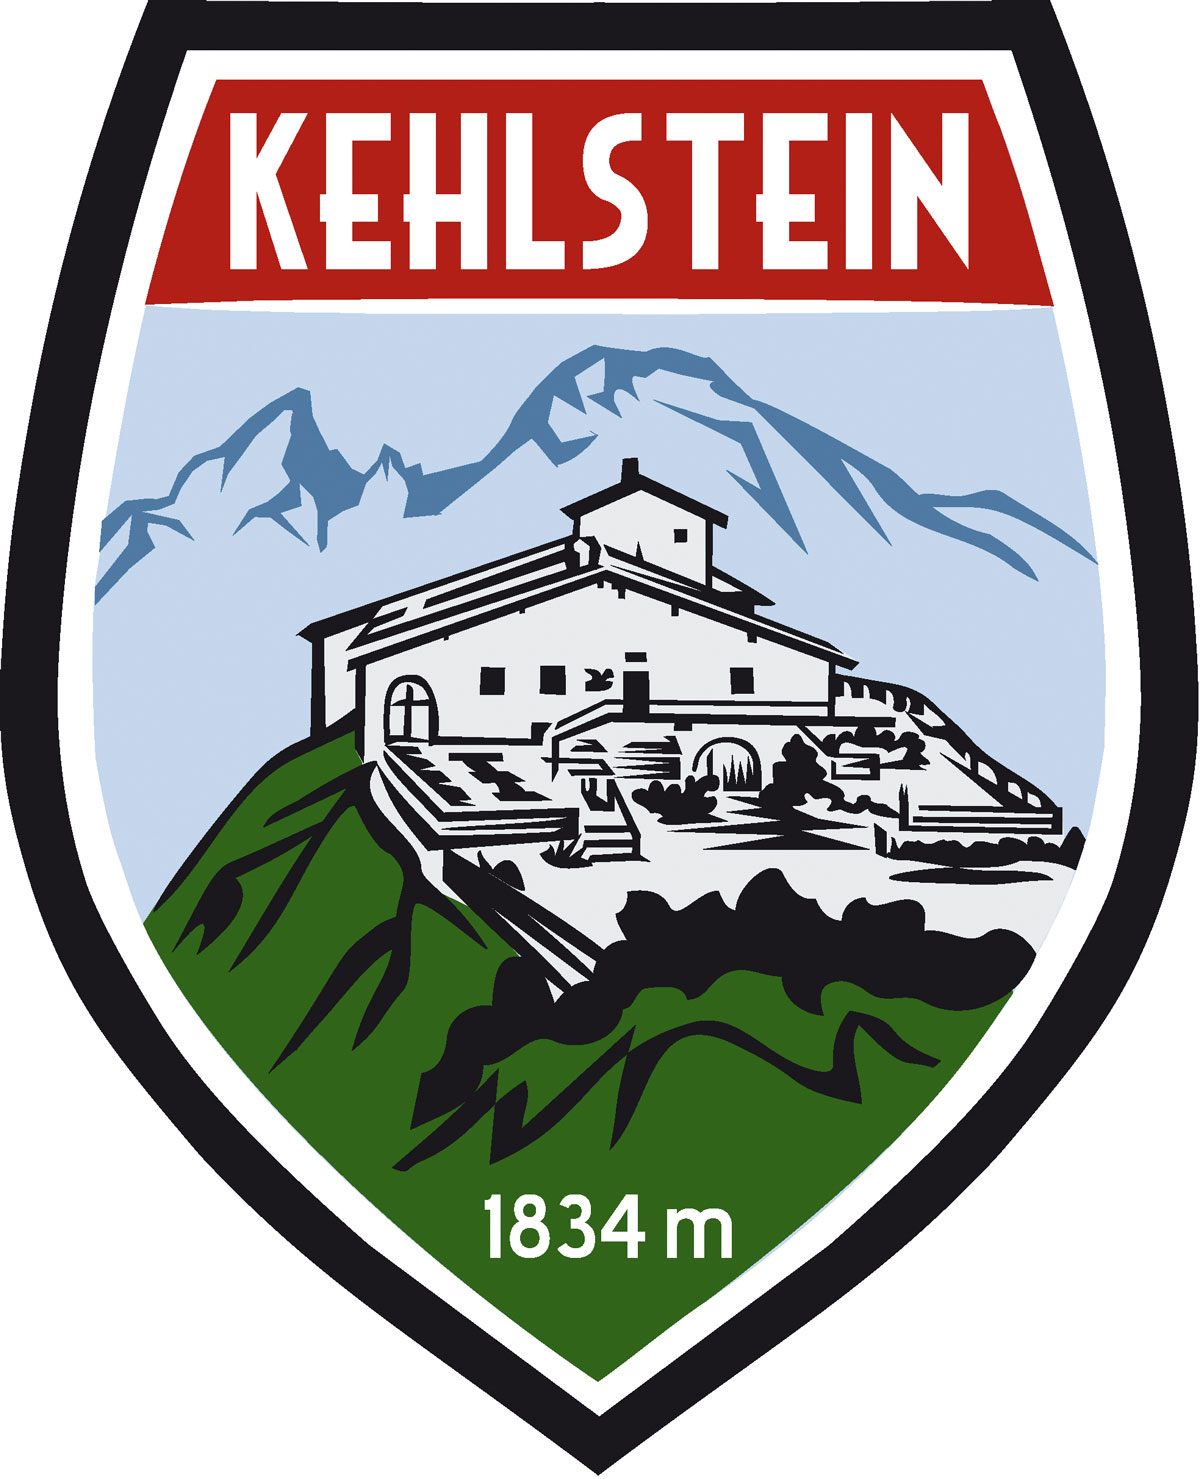 Wappen Aufkleber Sticker Kehlstein - Kehlsteinhaus - Eagles Nest  - Motiv grün/rot